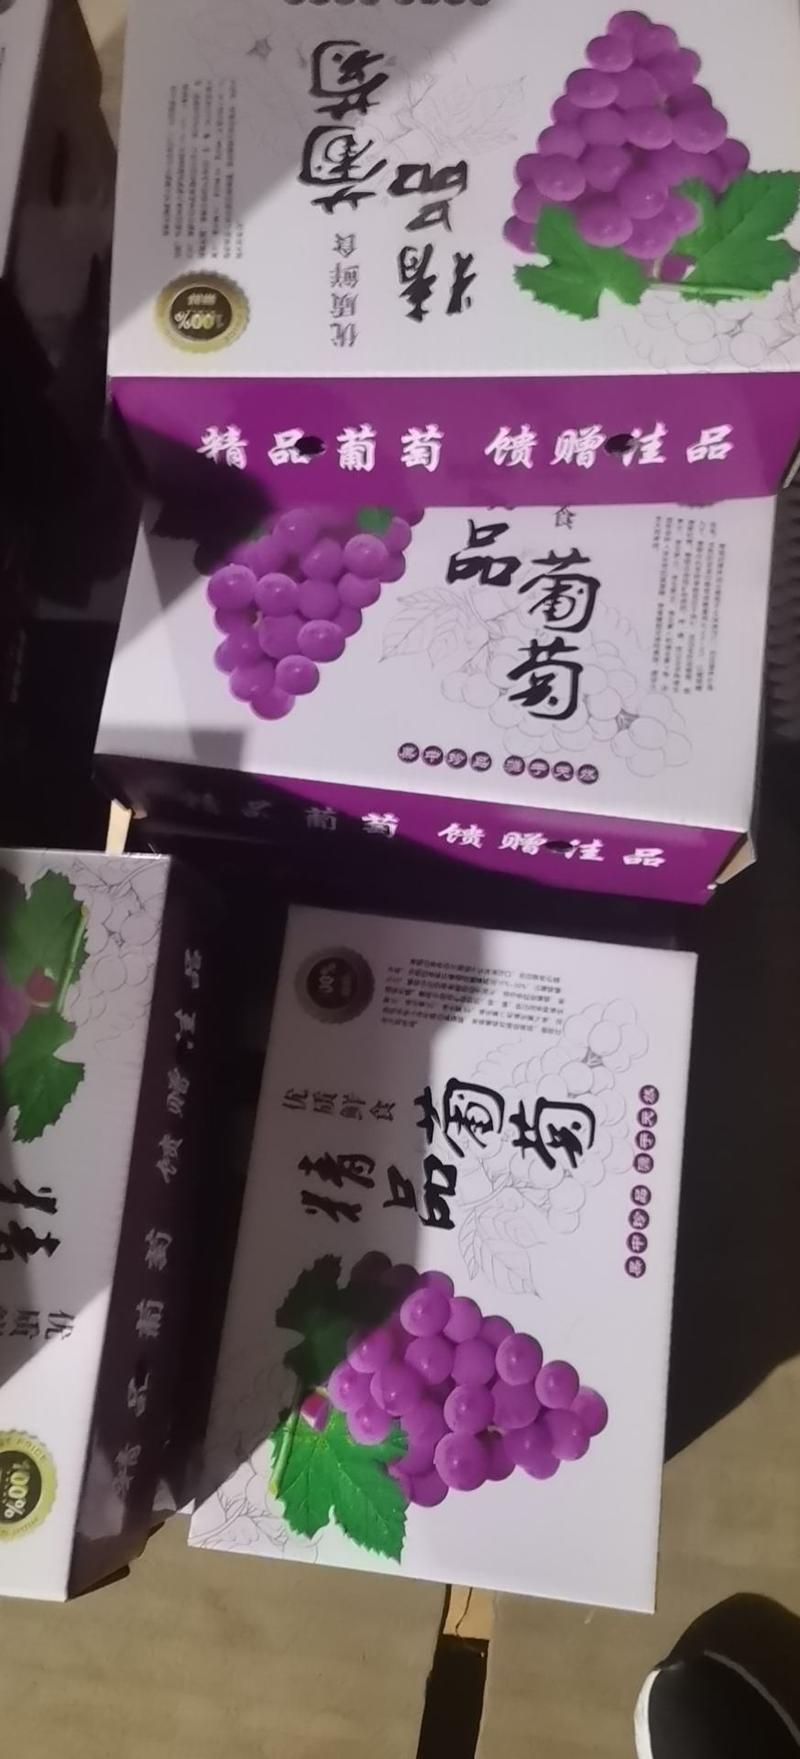 【实力】河北晋州绿康冷库巨峰葡萄大量有货欢迎订购